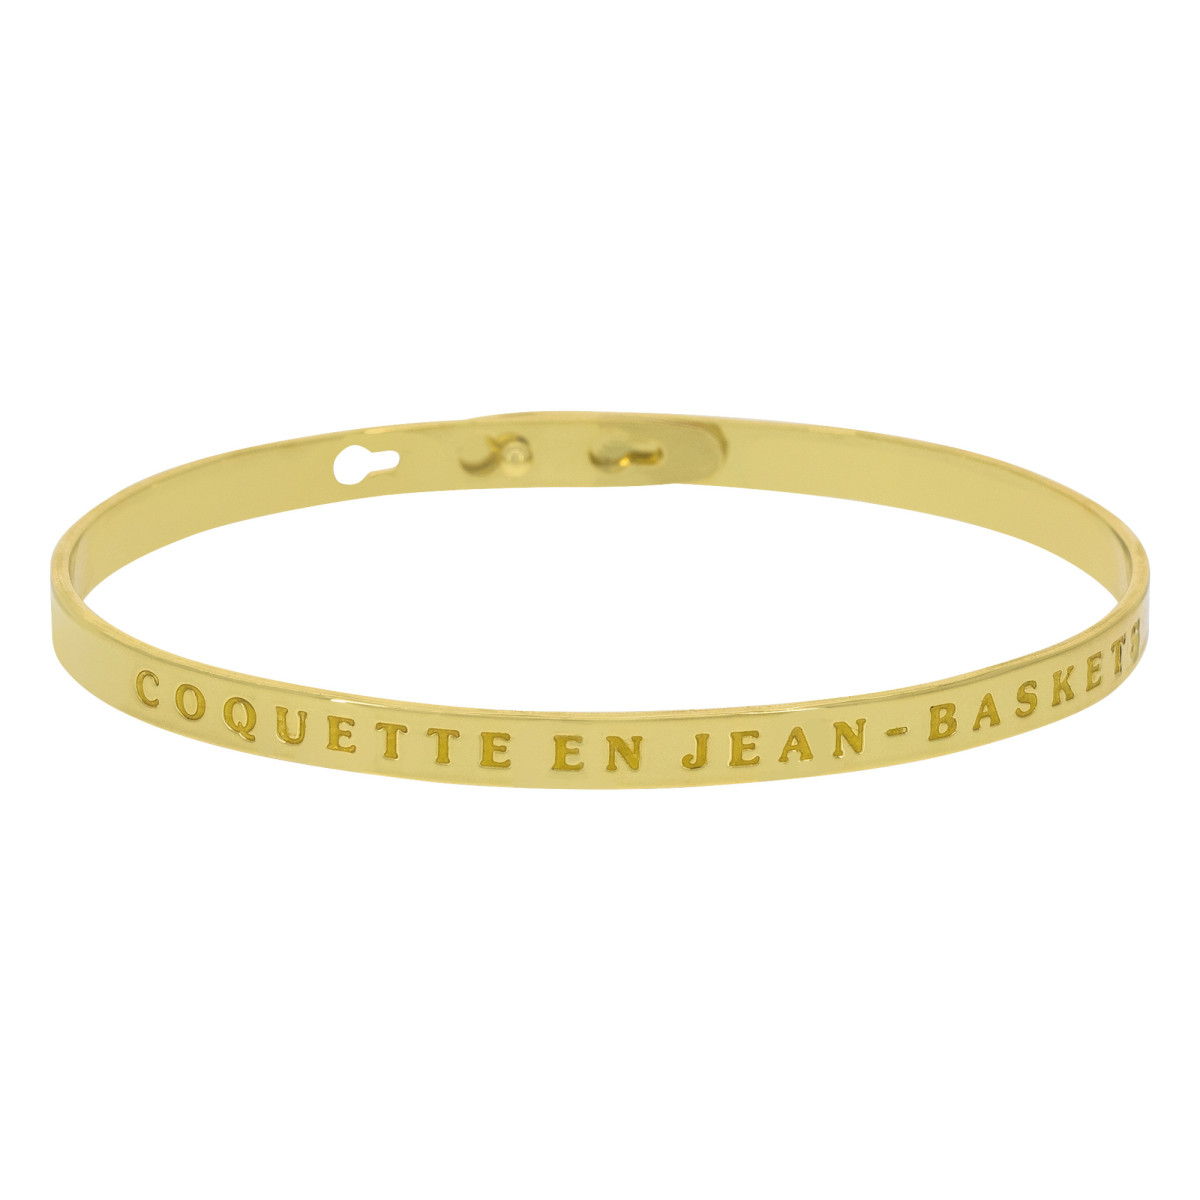 "COQUETTE EN JEAN-BASKETS" bracelet jonc doré à message